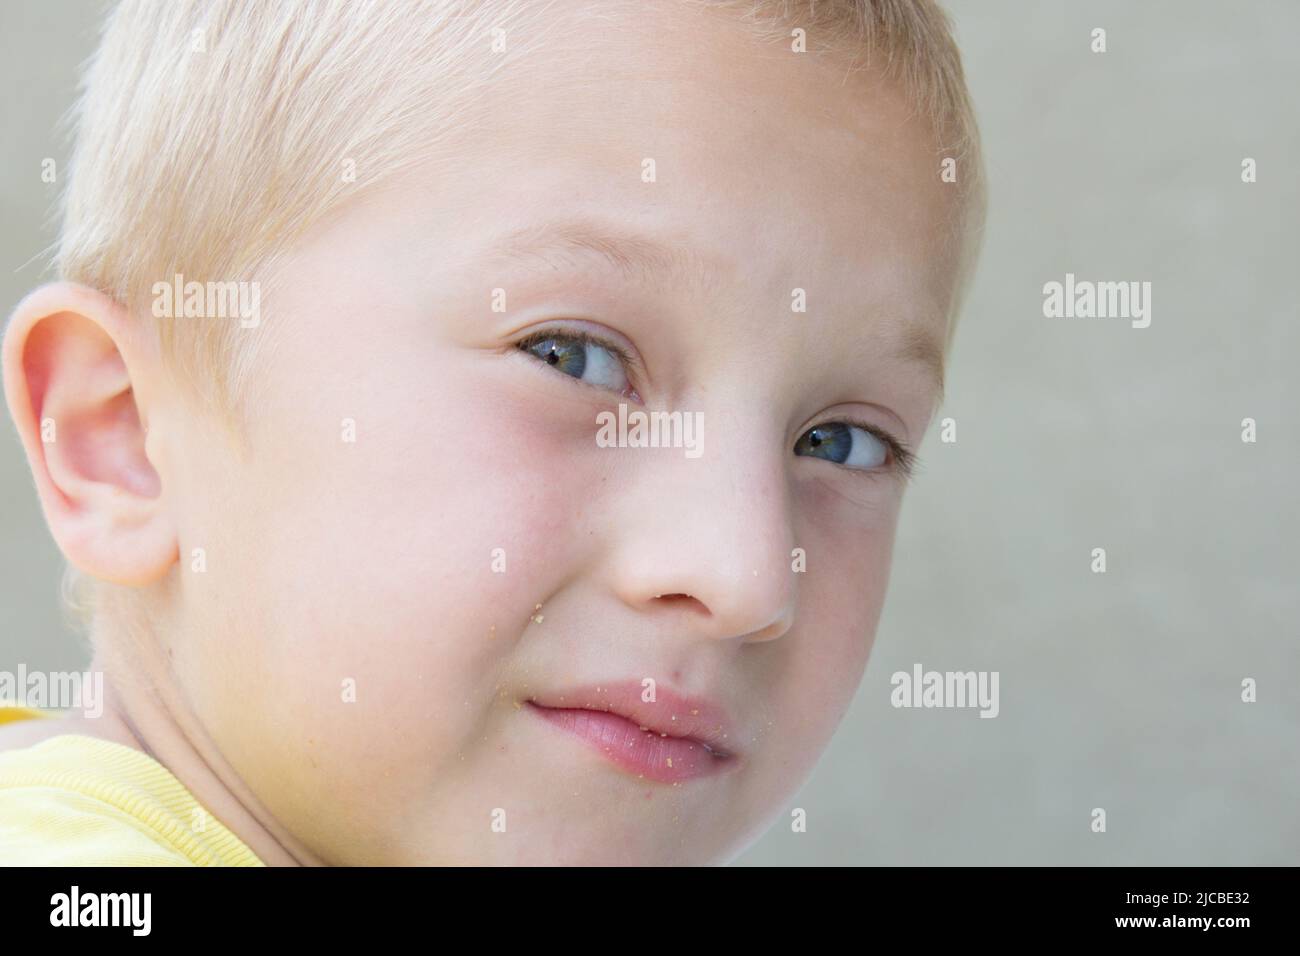 beau garçon blond avec les yeux bleus regardé sur les côtés portrait Banque D'Images